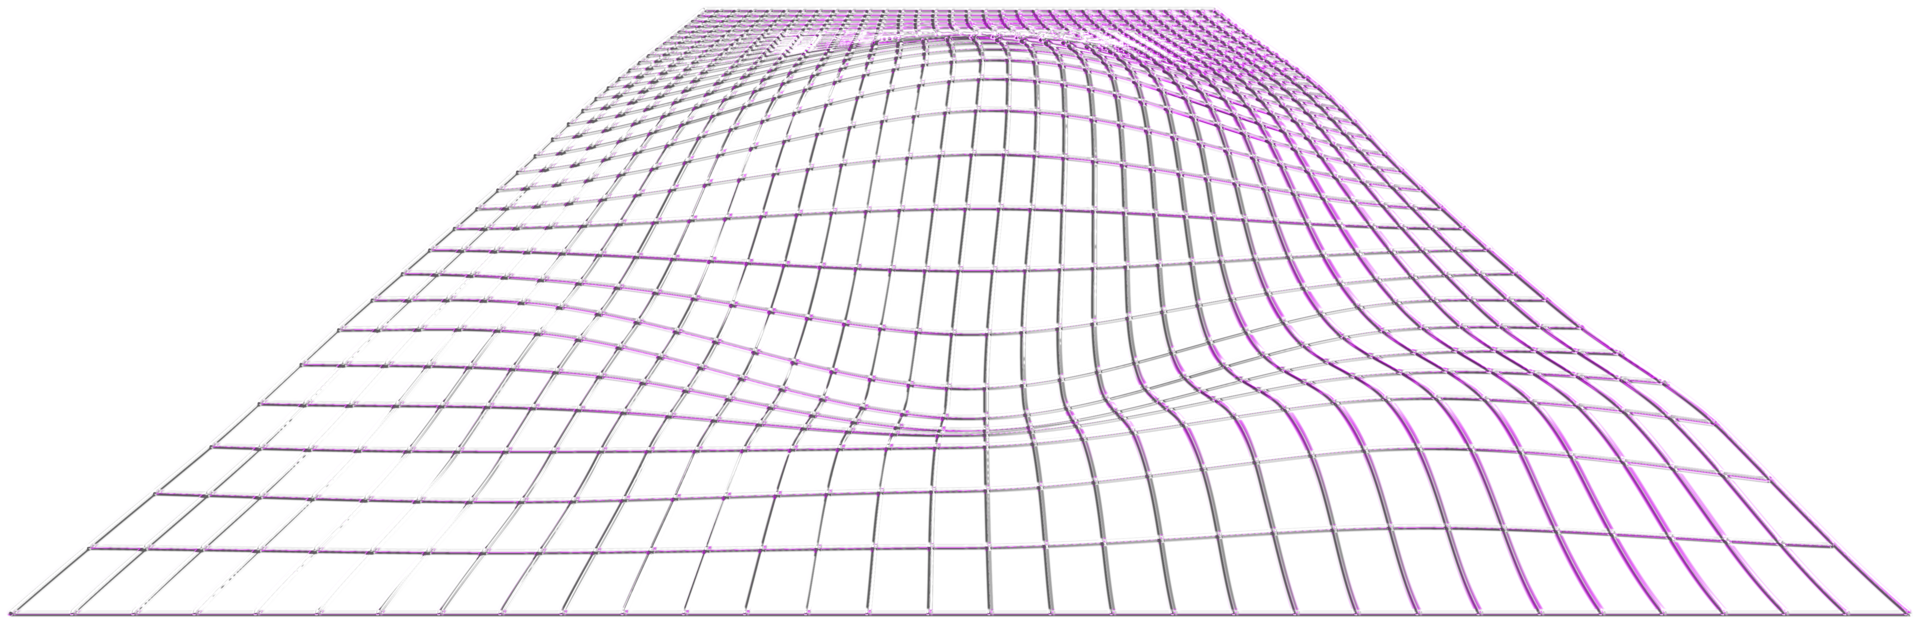 renderizado 3d abstracto, forma ondulada, esfera distorsionada. renderizado 3d. conjunto de diferentes formas geométricas iridiscentes. objetos de metal minimalistas modernos. clipart futurista png